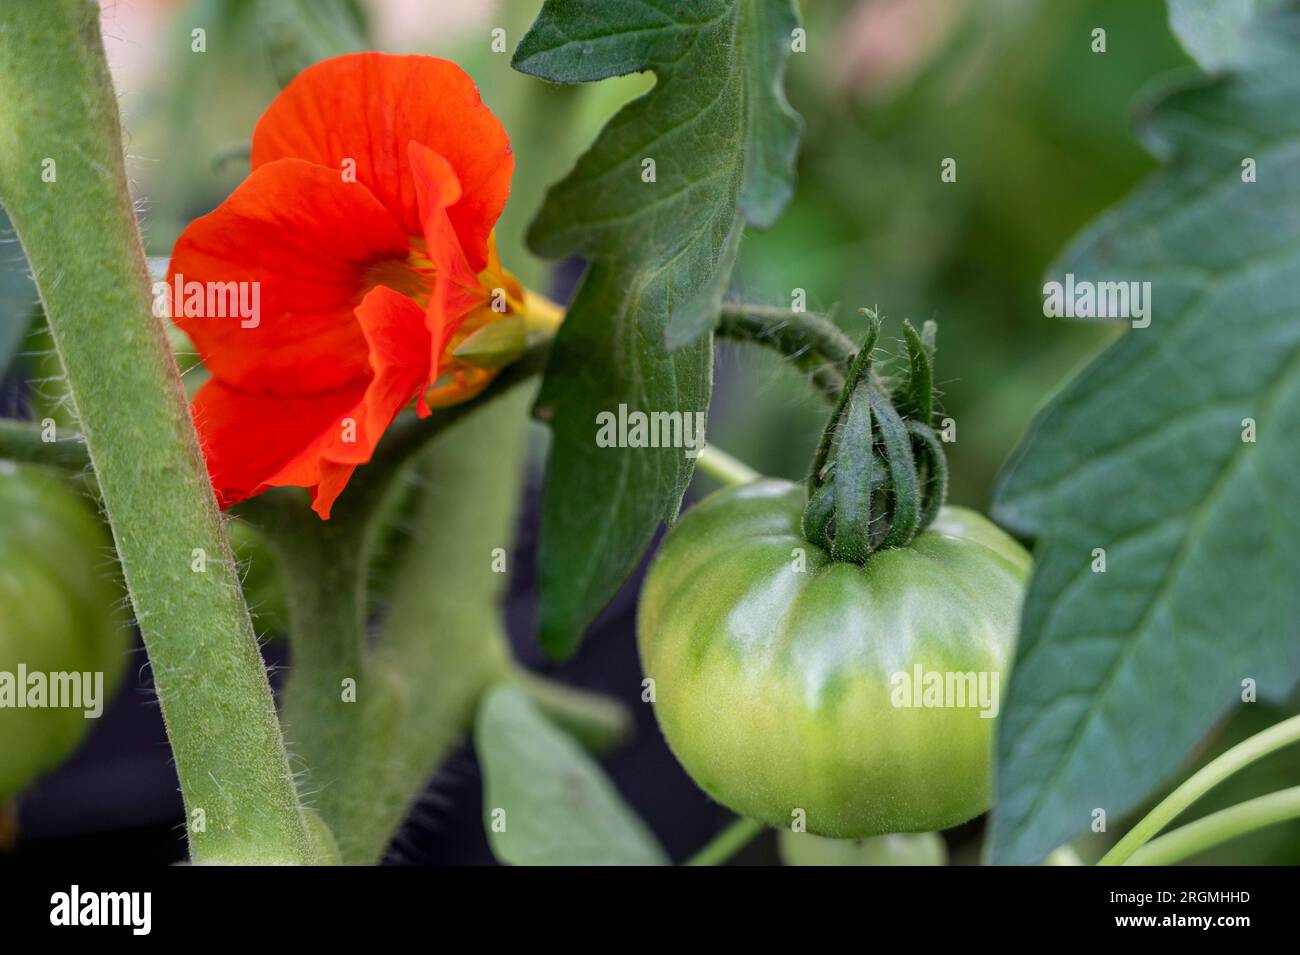 Kapuzinerkresse, die als Begleitpflanze für Tomaten angebaut werden, um Bestäuber anzulocken und schädliche Schädlinge wie Blattläuse zu vertreiben. Stockfoto